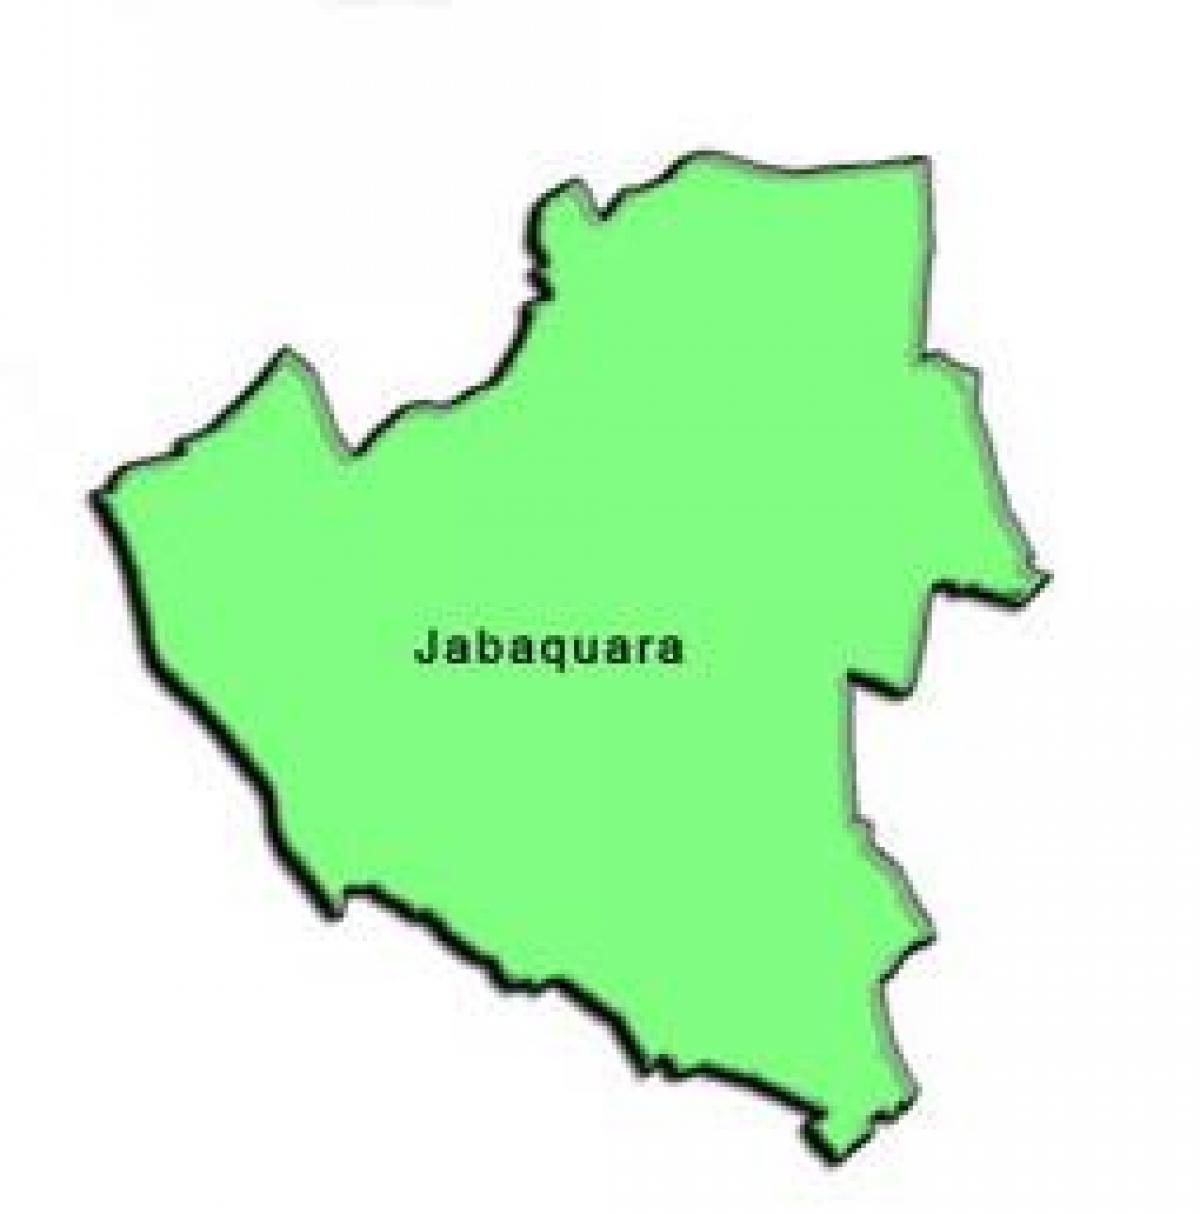 Mapa de Jabaquara sub-concello